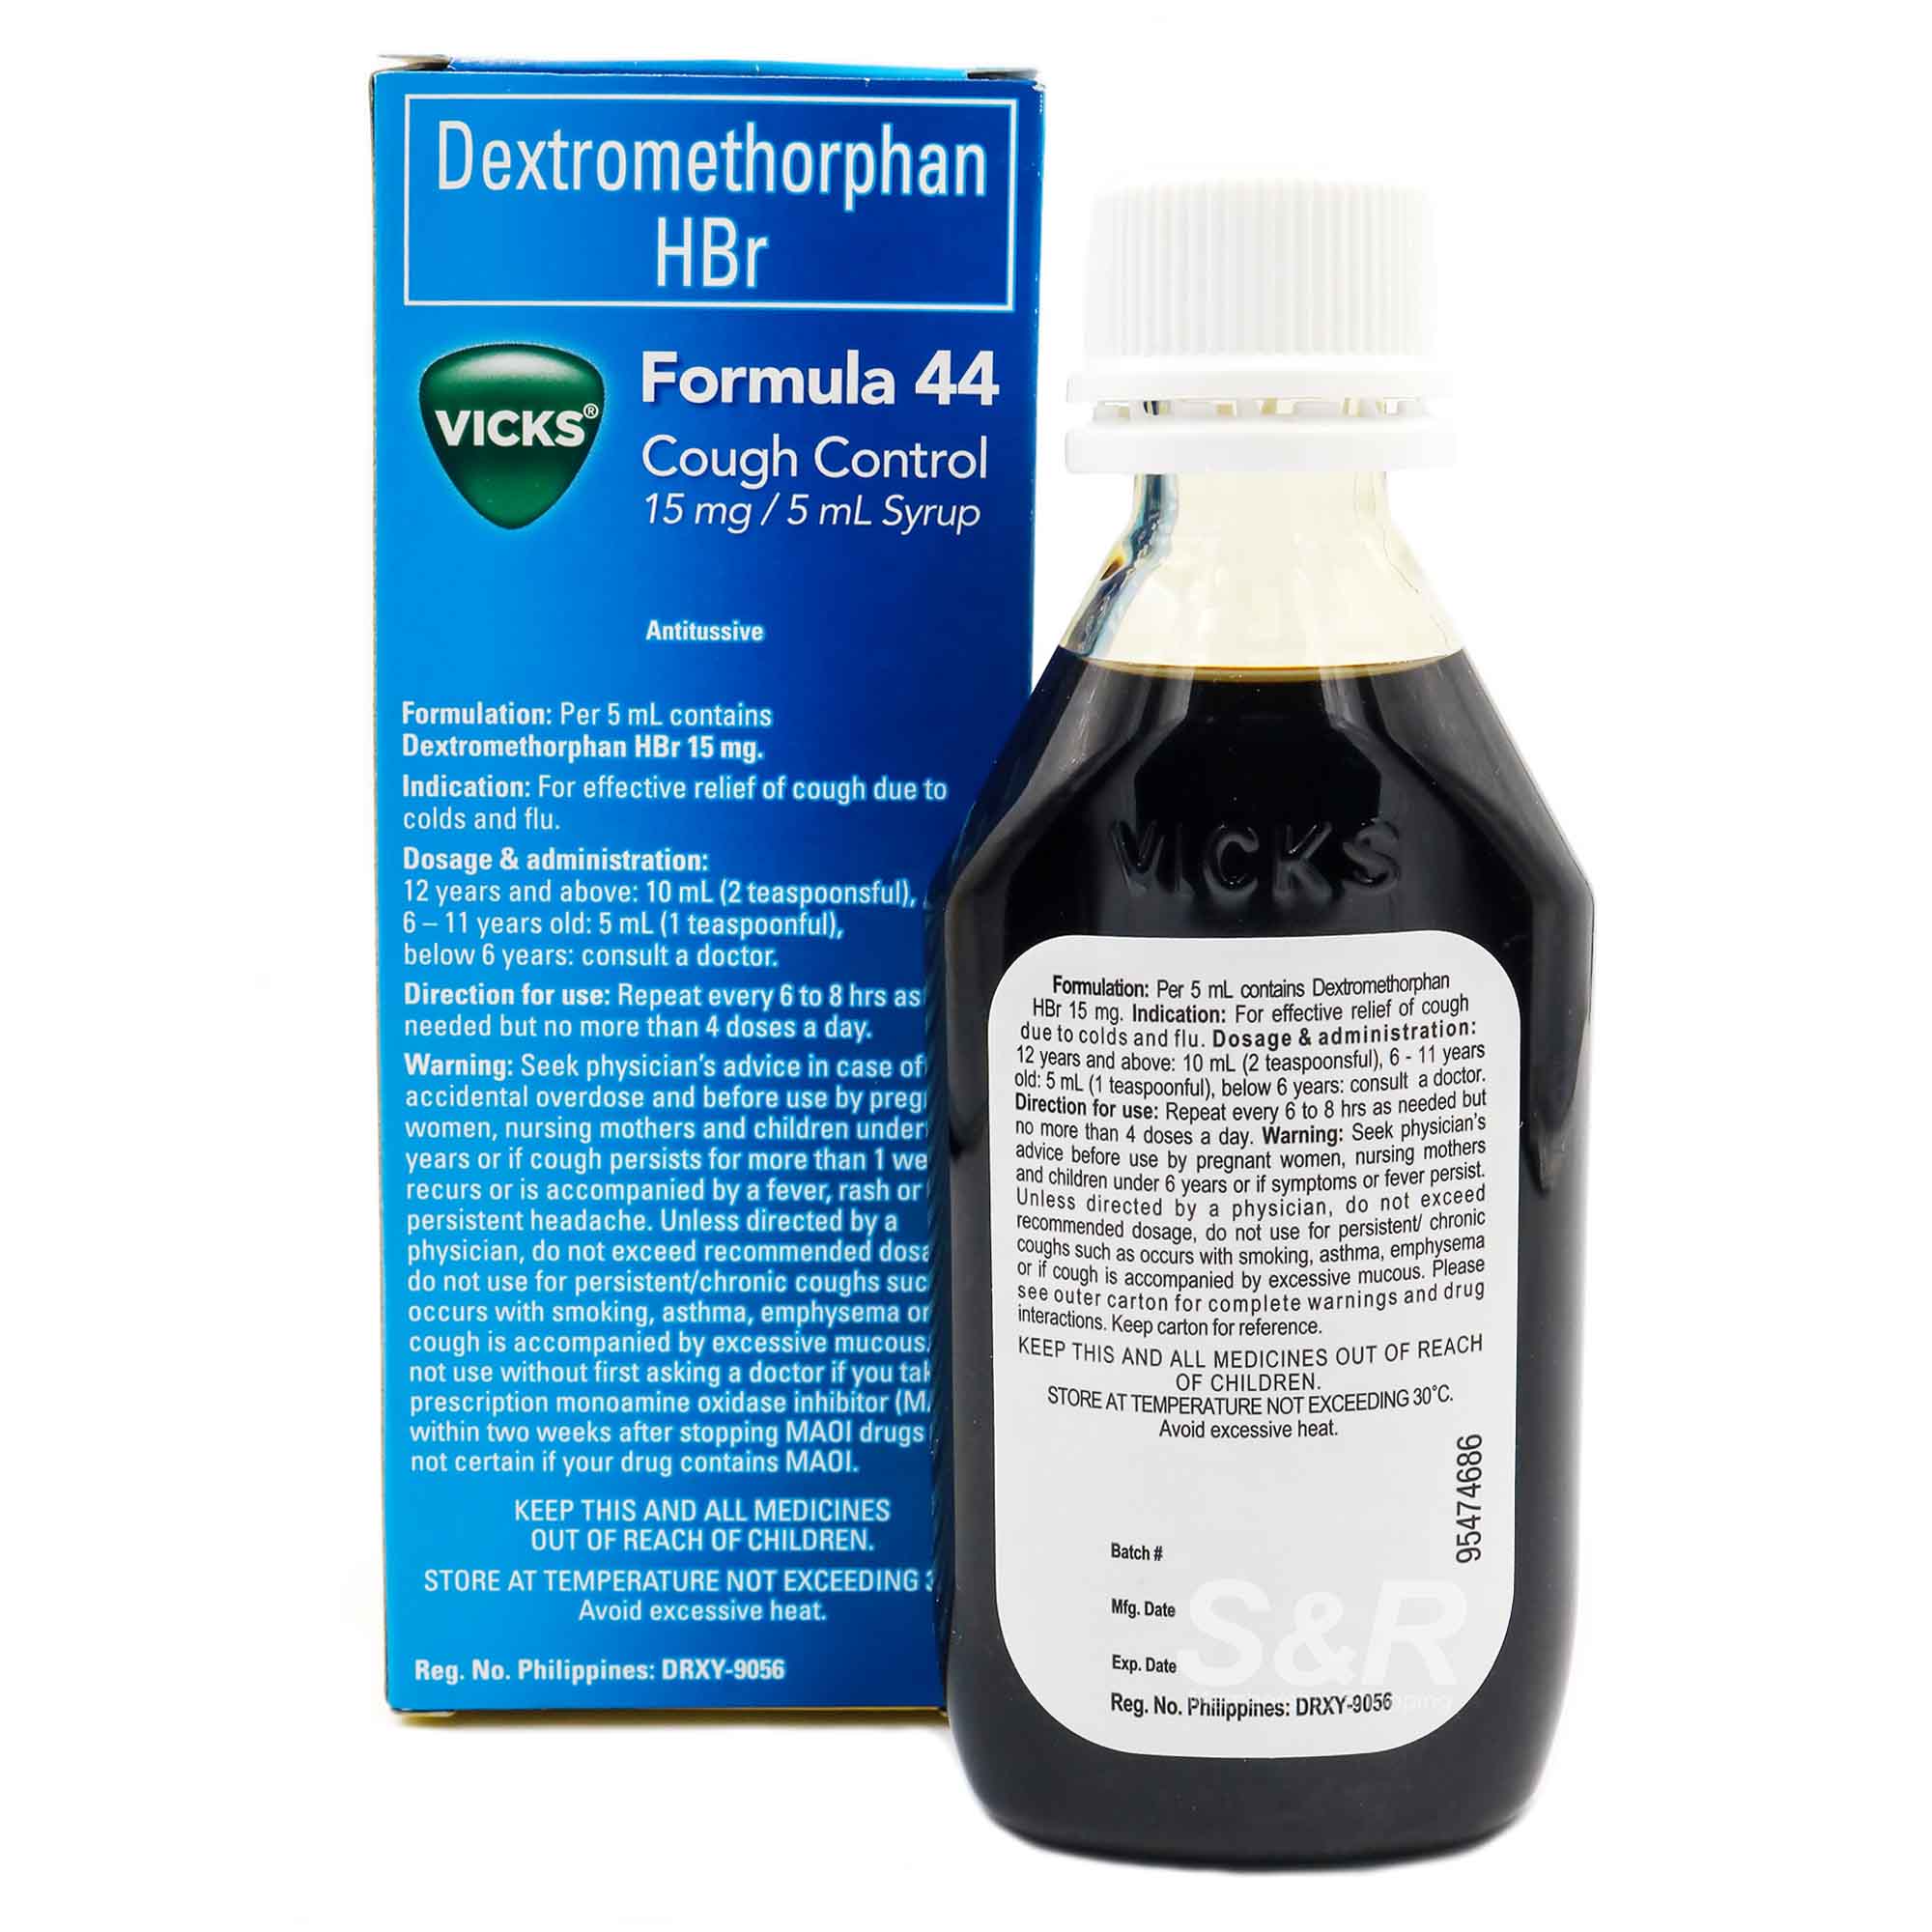 Formula 44 Cough Control